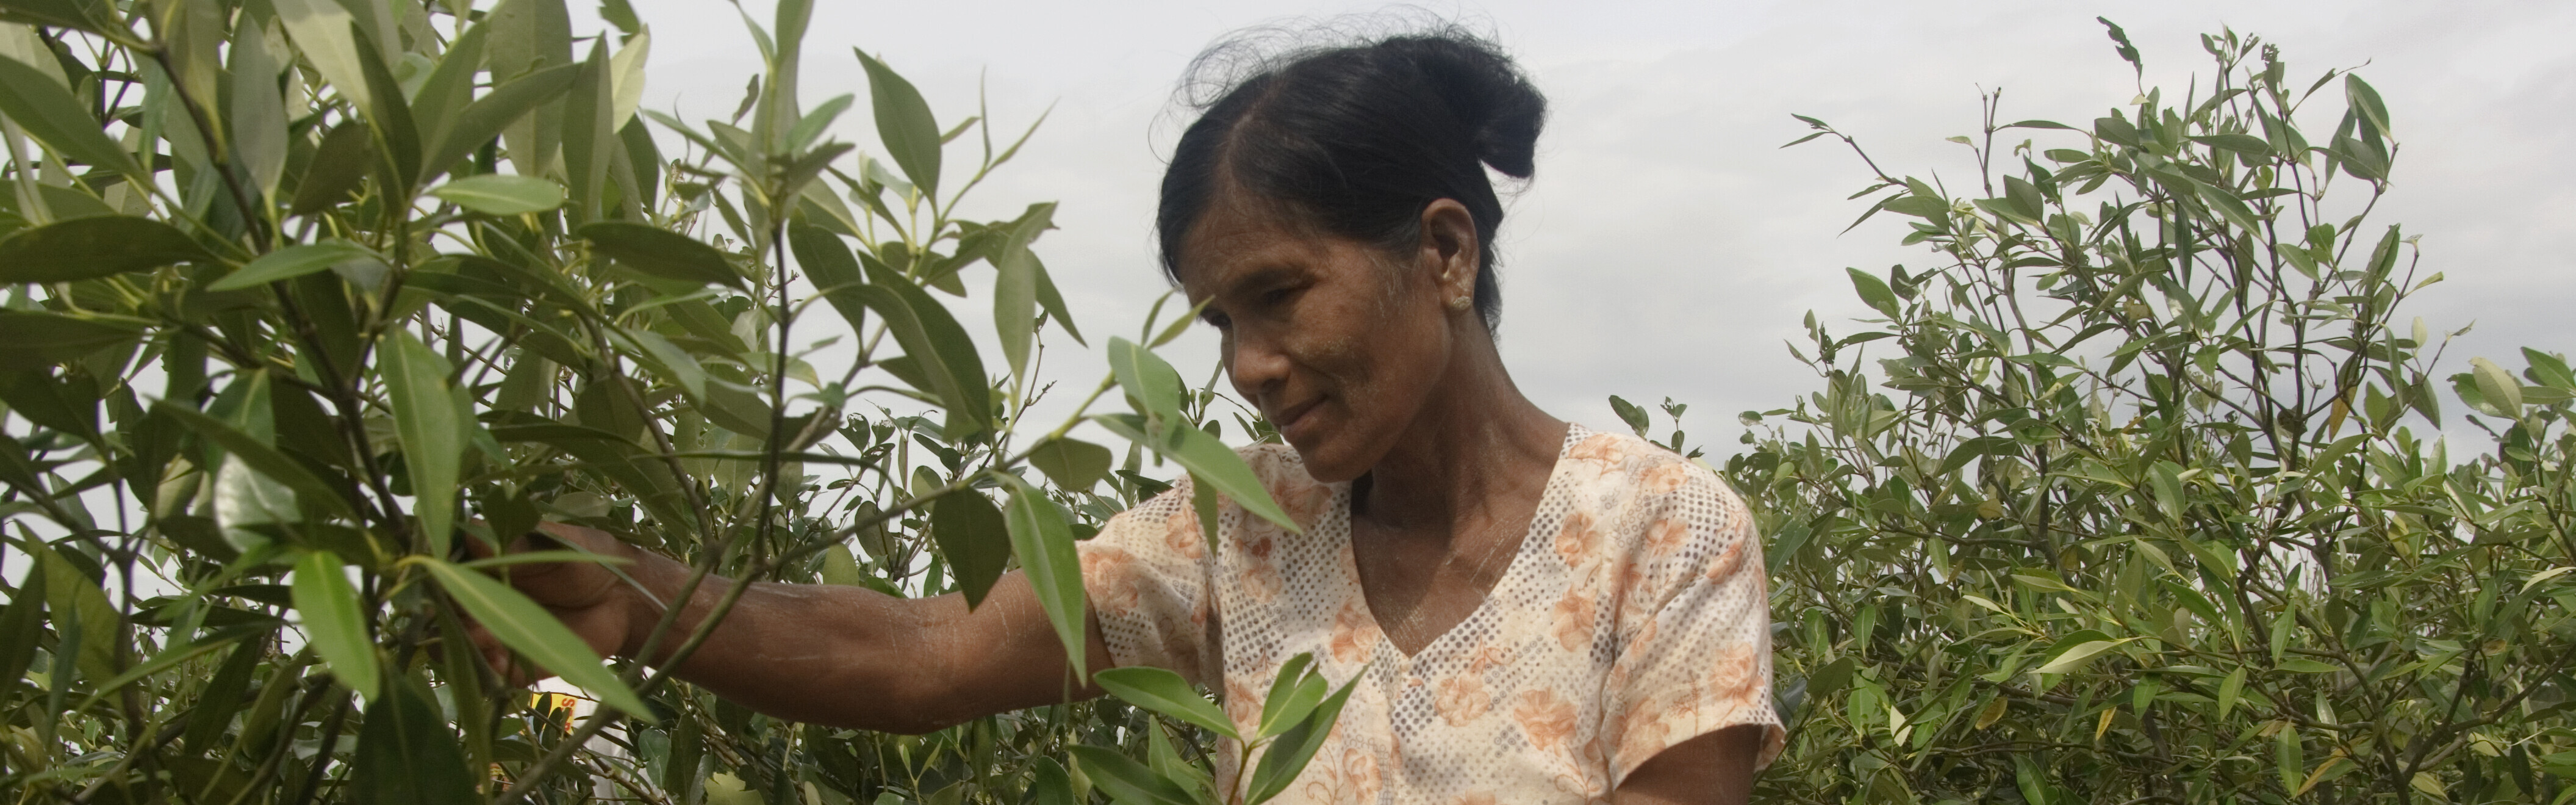 In Thailand pflanzt eine Frau Mangroven zum Schutz vor Überflutungen